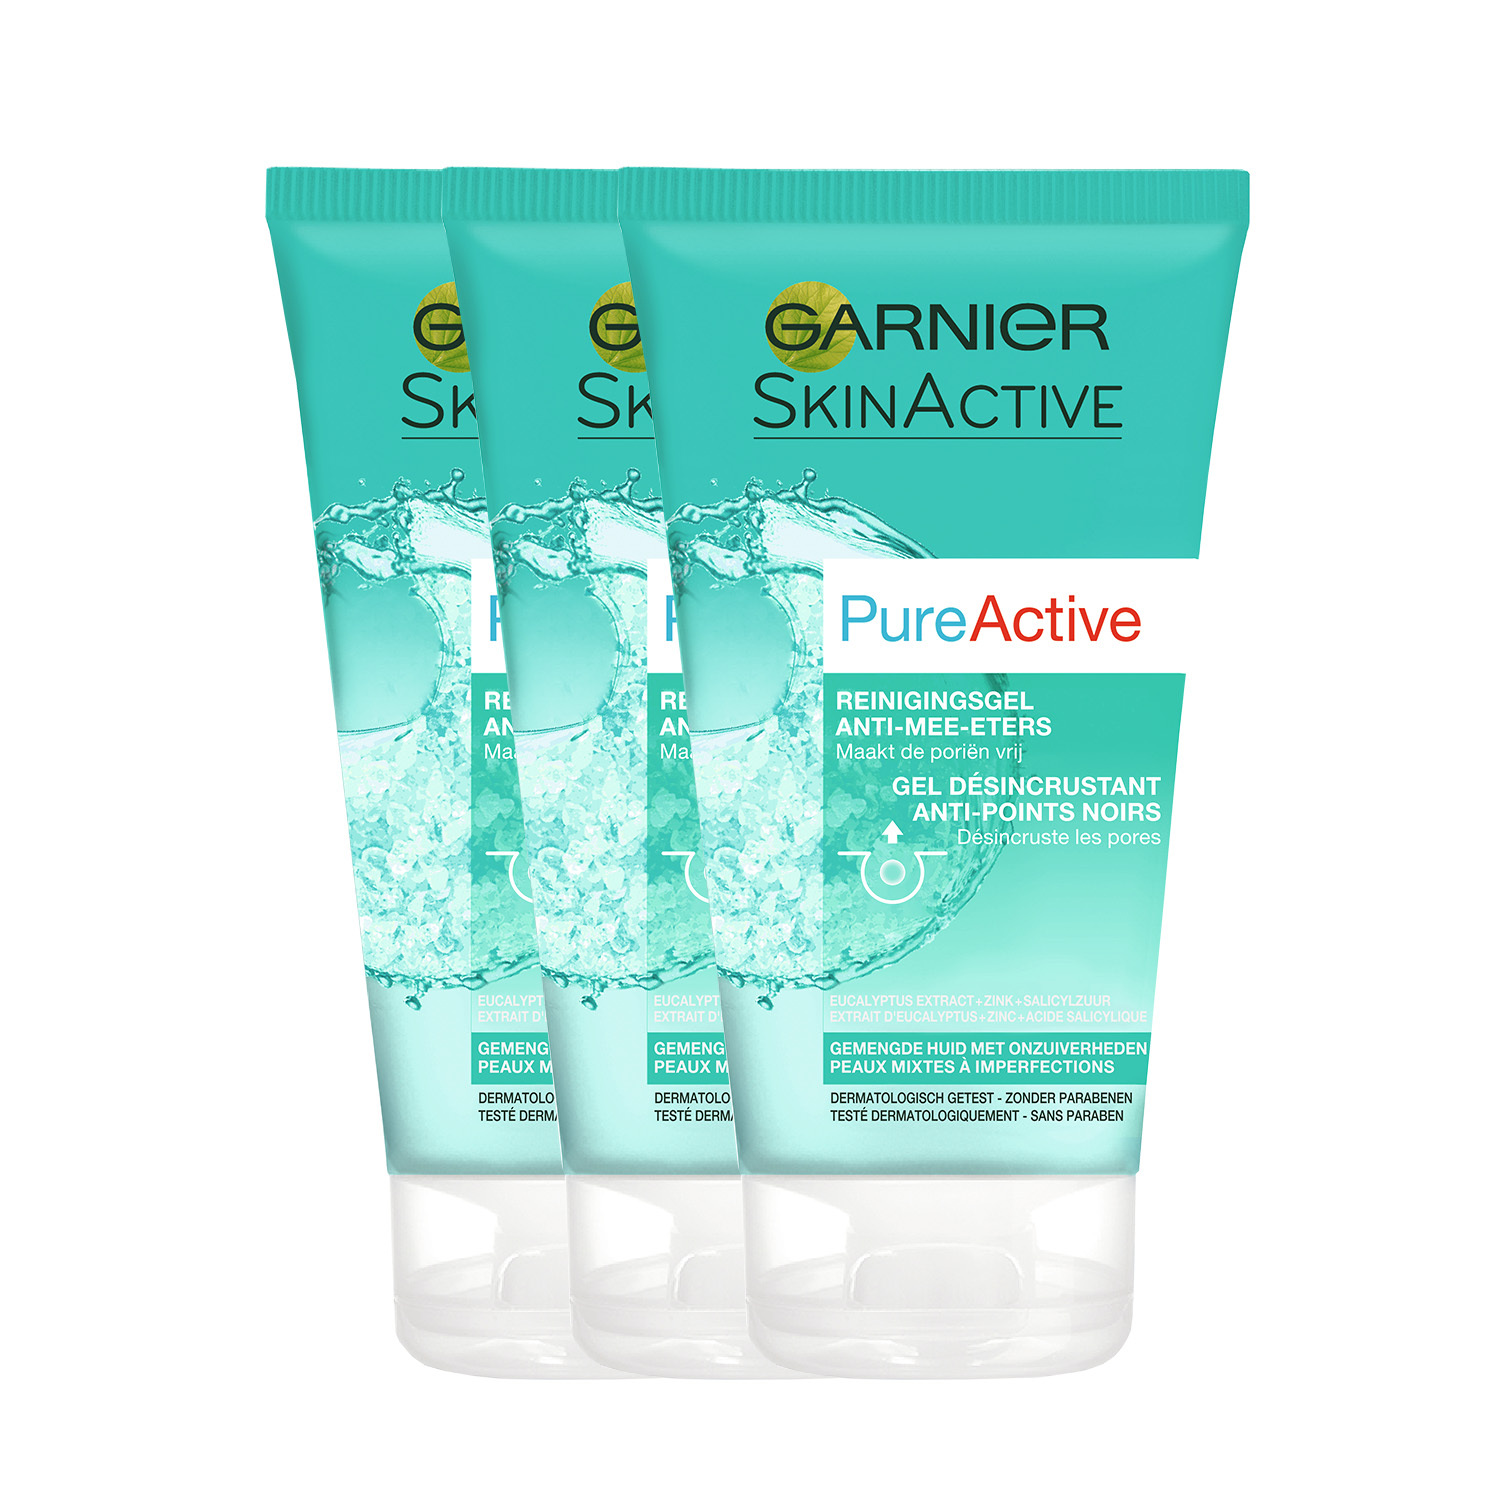 Garnier Skinactive Face SkinActive – PureActive Reinigingsgel Anti-Mee-Eters voor een Gemengde Huid - 150ml X 3 – Gezichtsreiniging